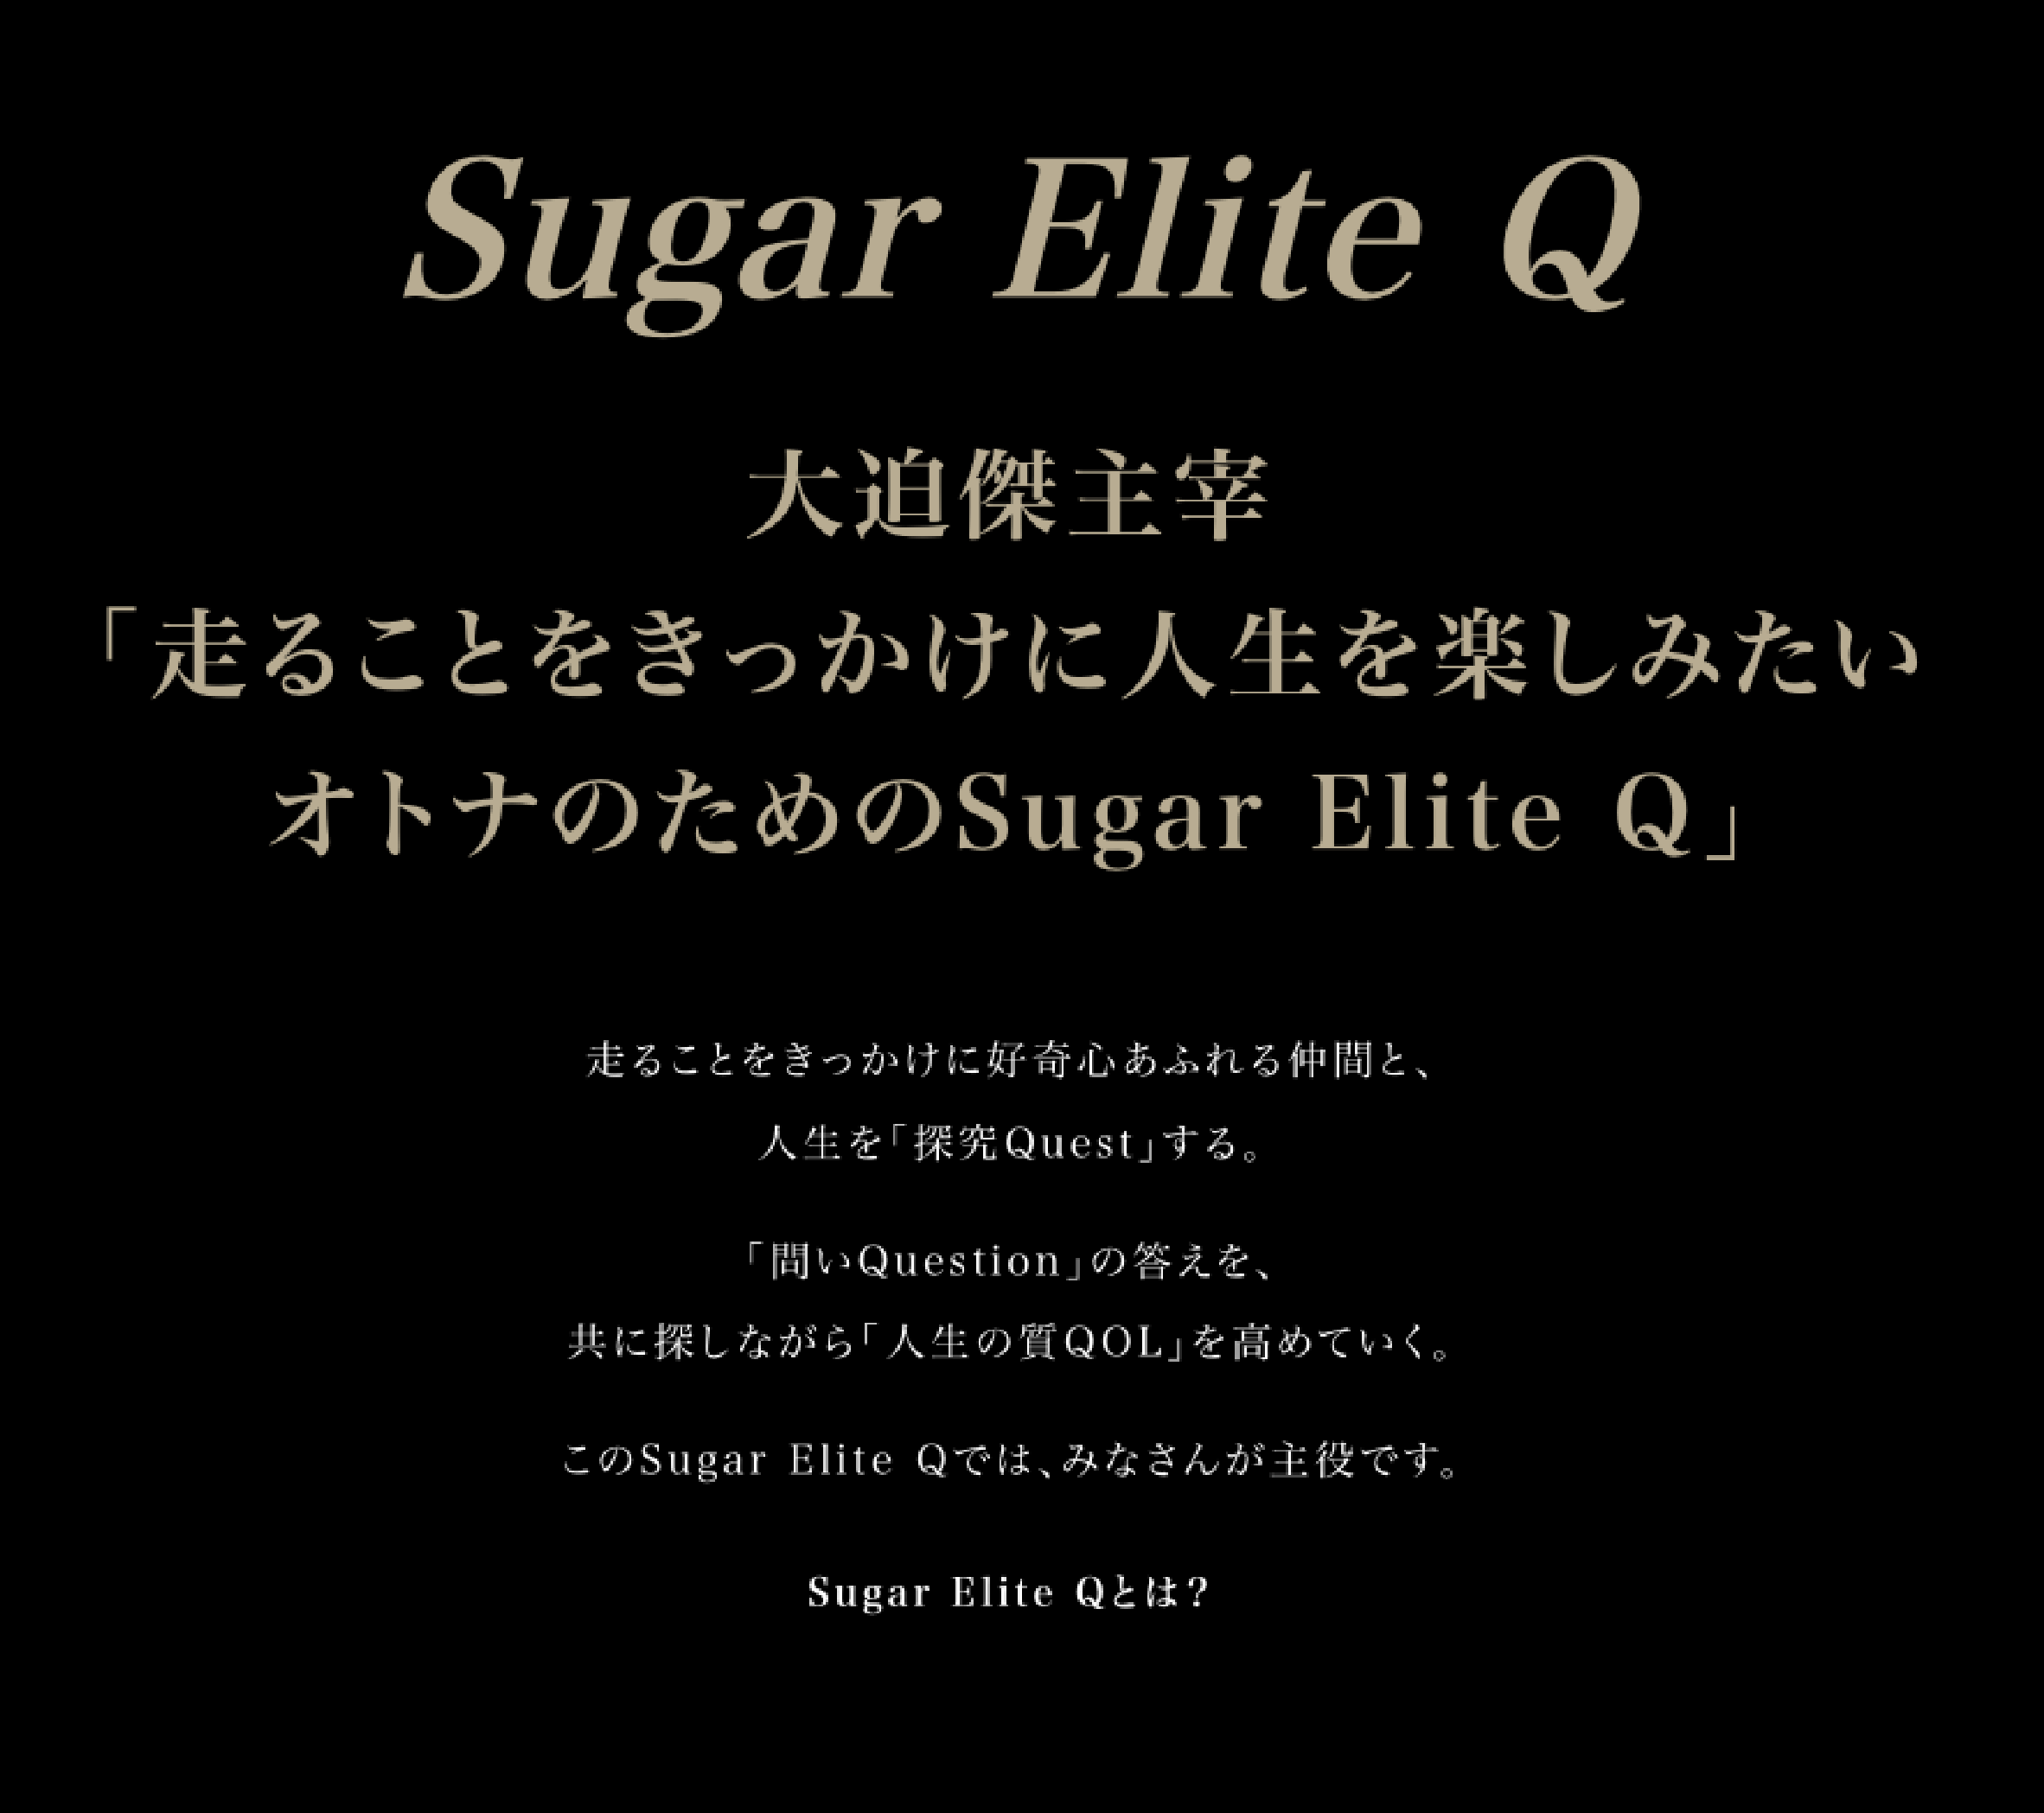 Sugar Elite Qの導入事例